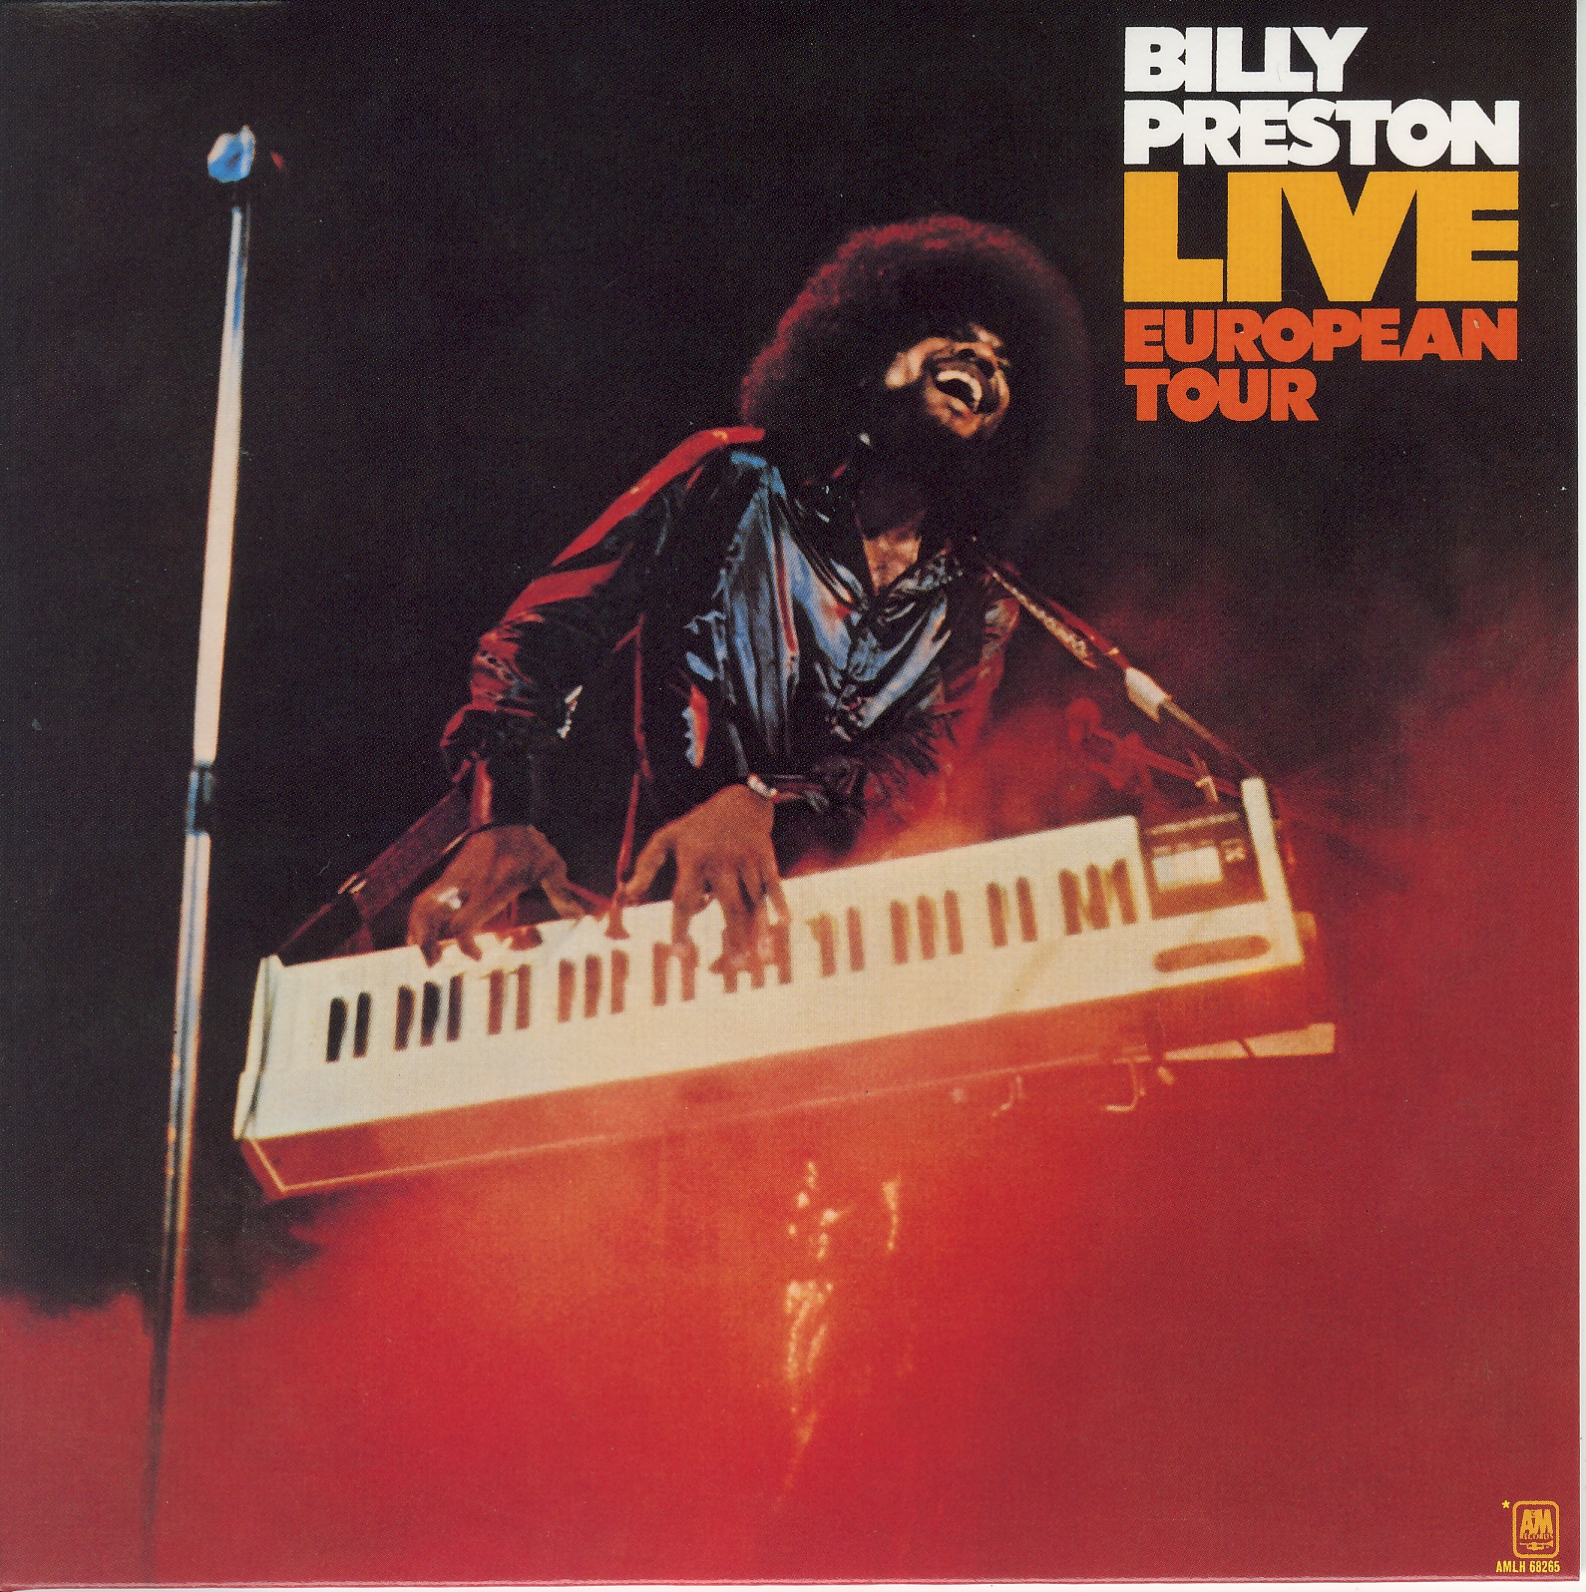 Billy Preston Live European Tour 1973